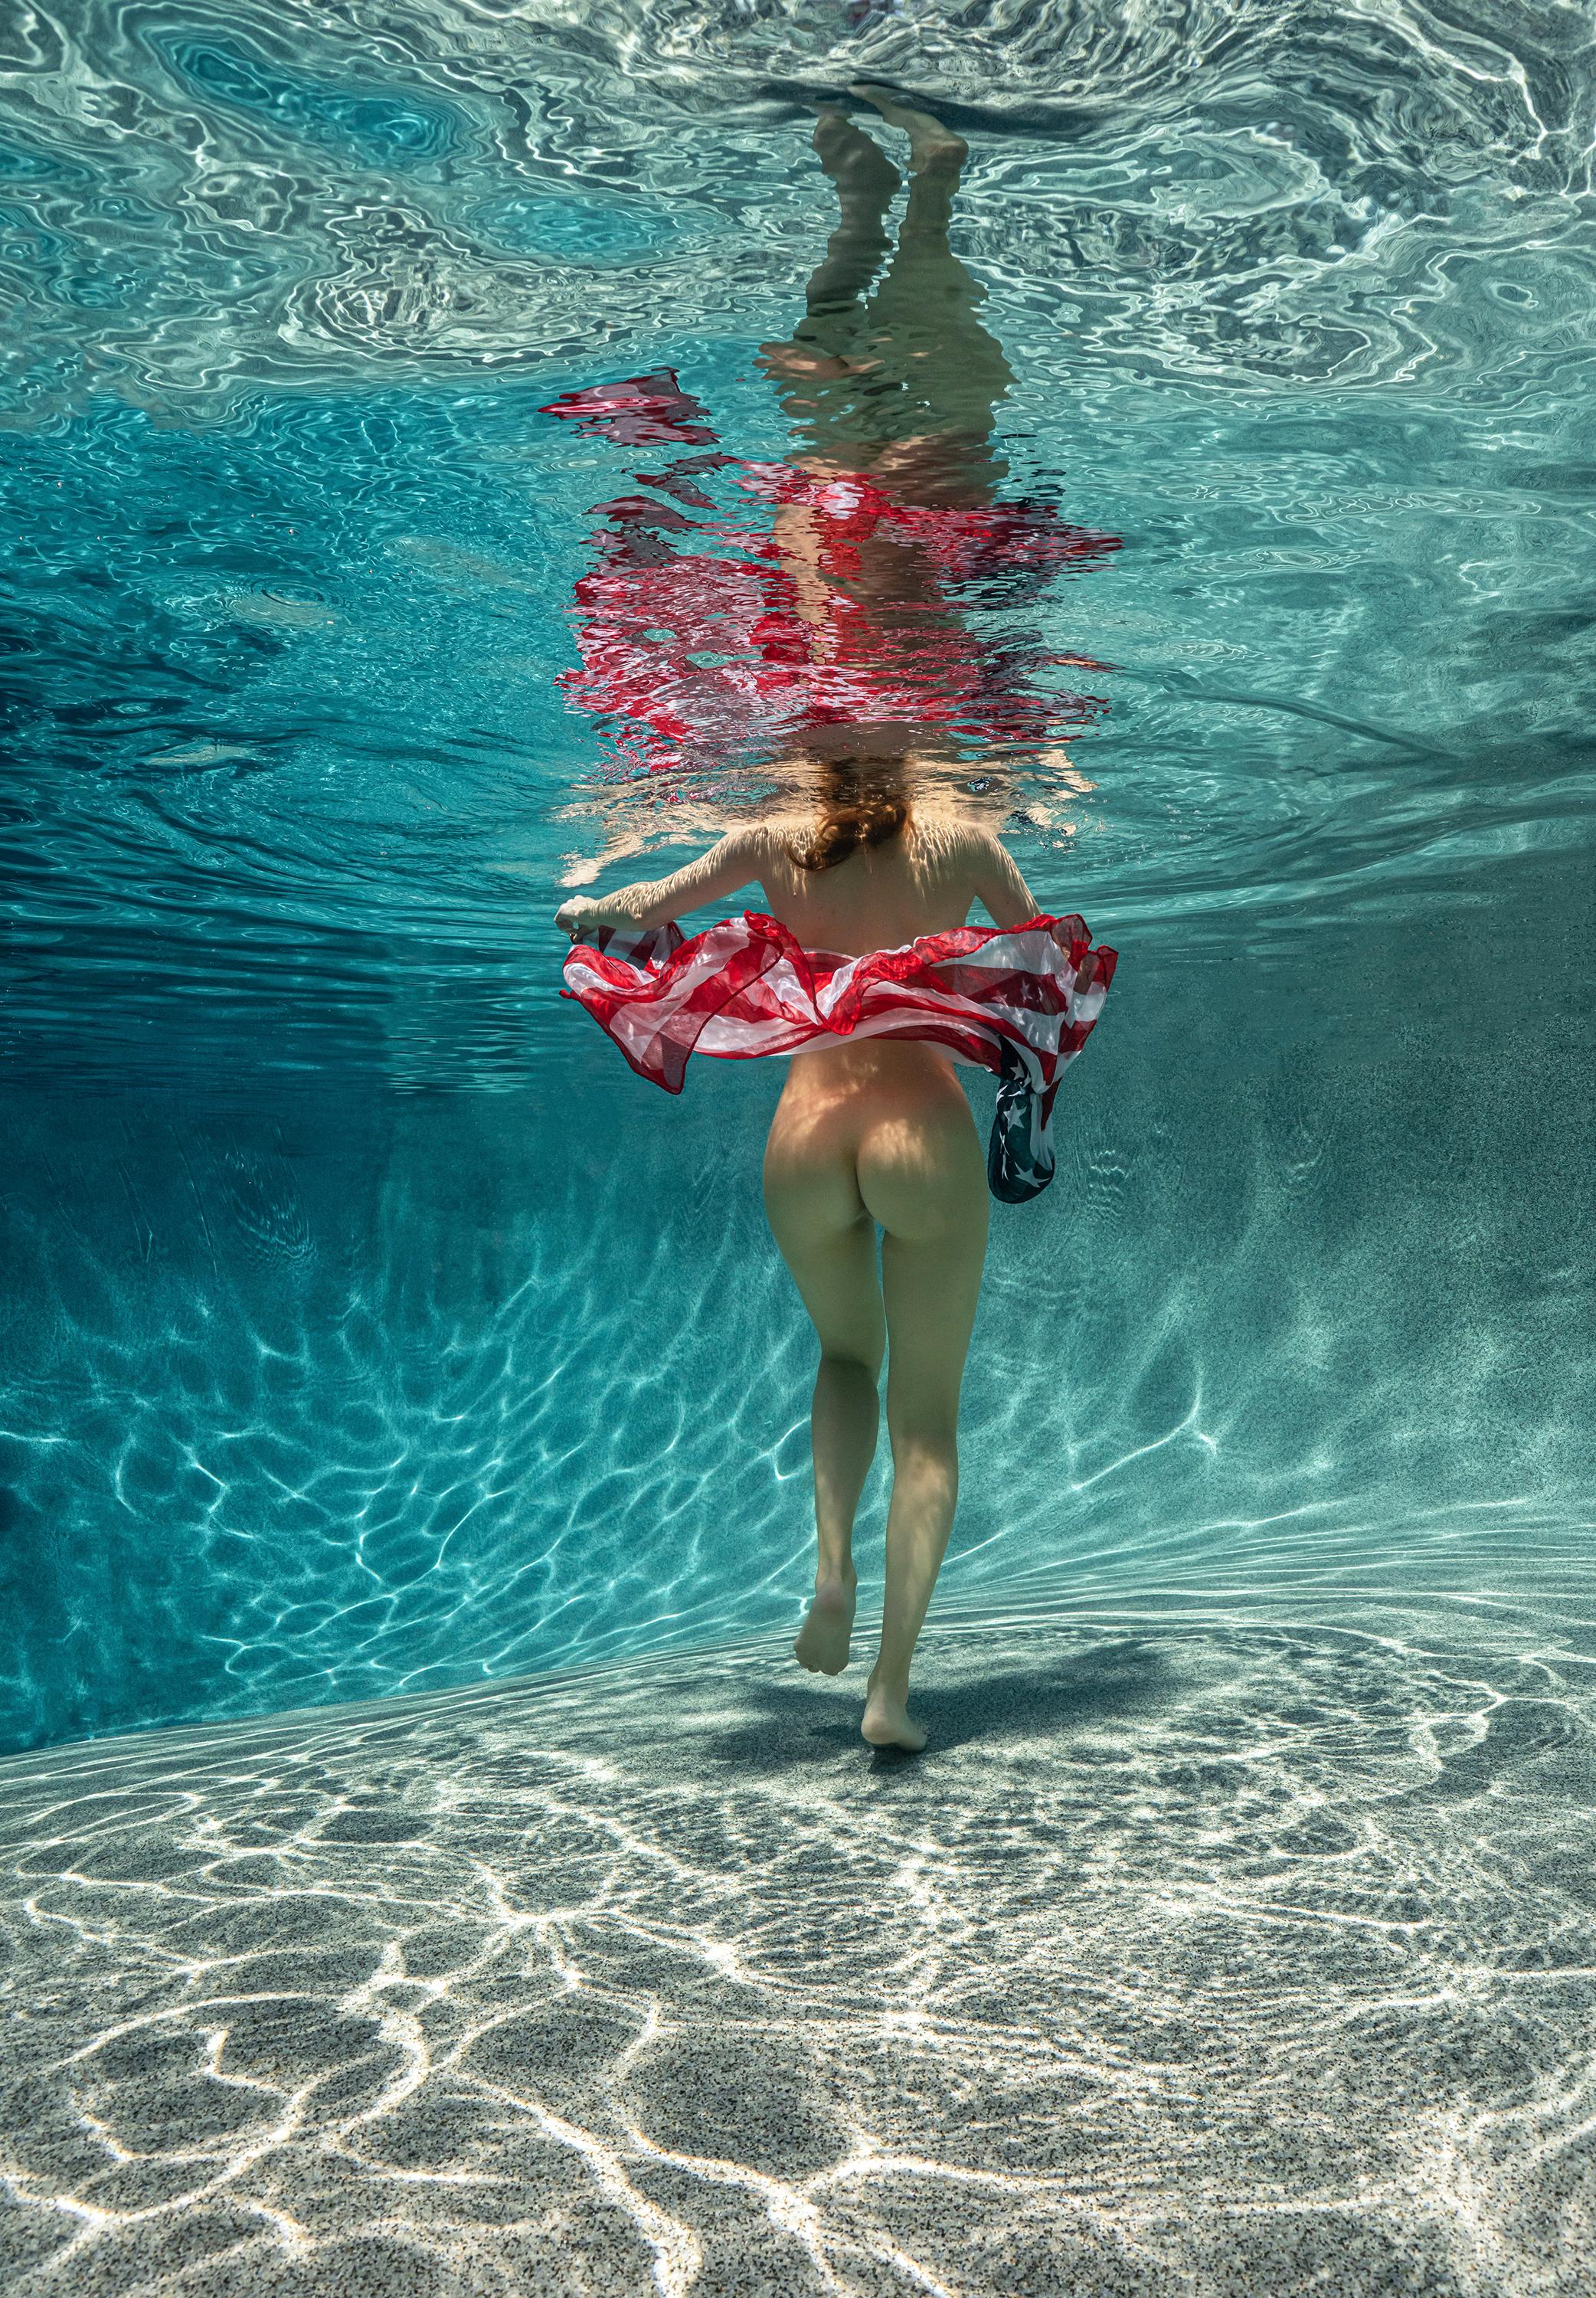 Alex Sher Nude Photograph – Unabhängigkeit II - Unterwasser Aktfotografie - Pigment Archivdruck 35х24